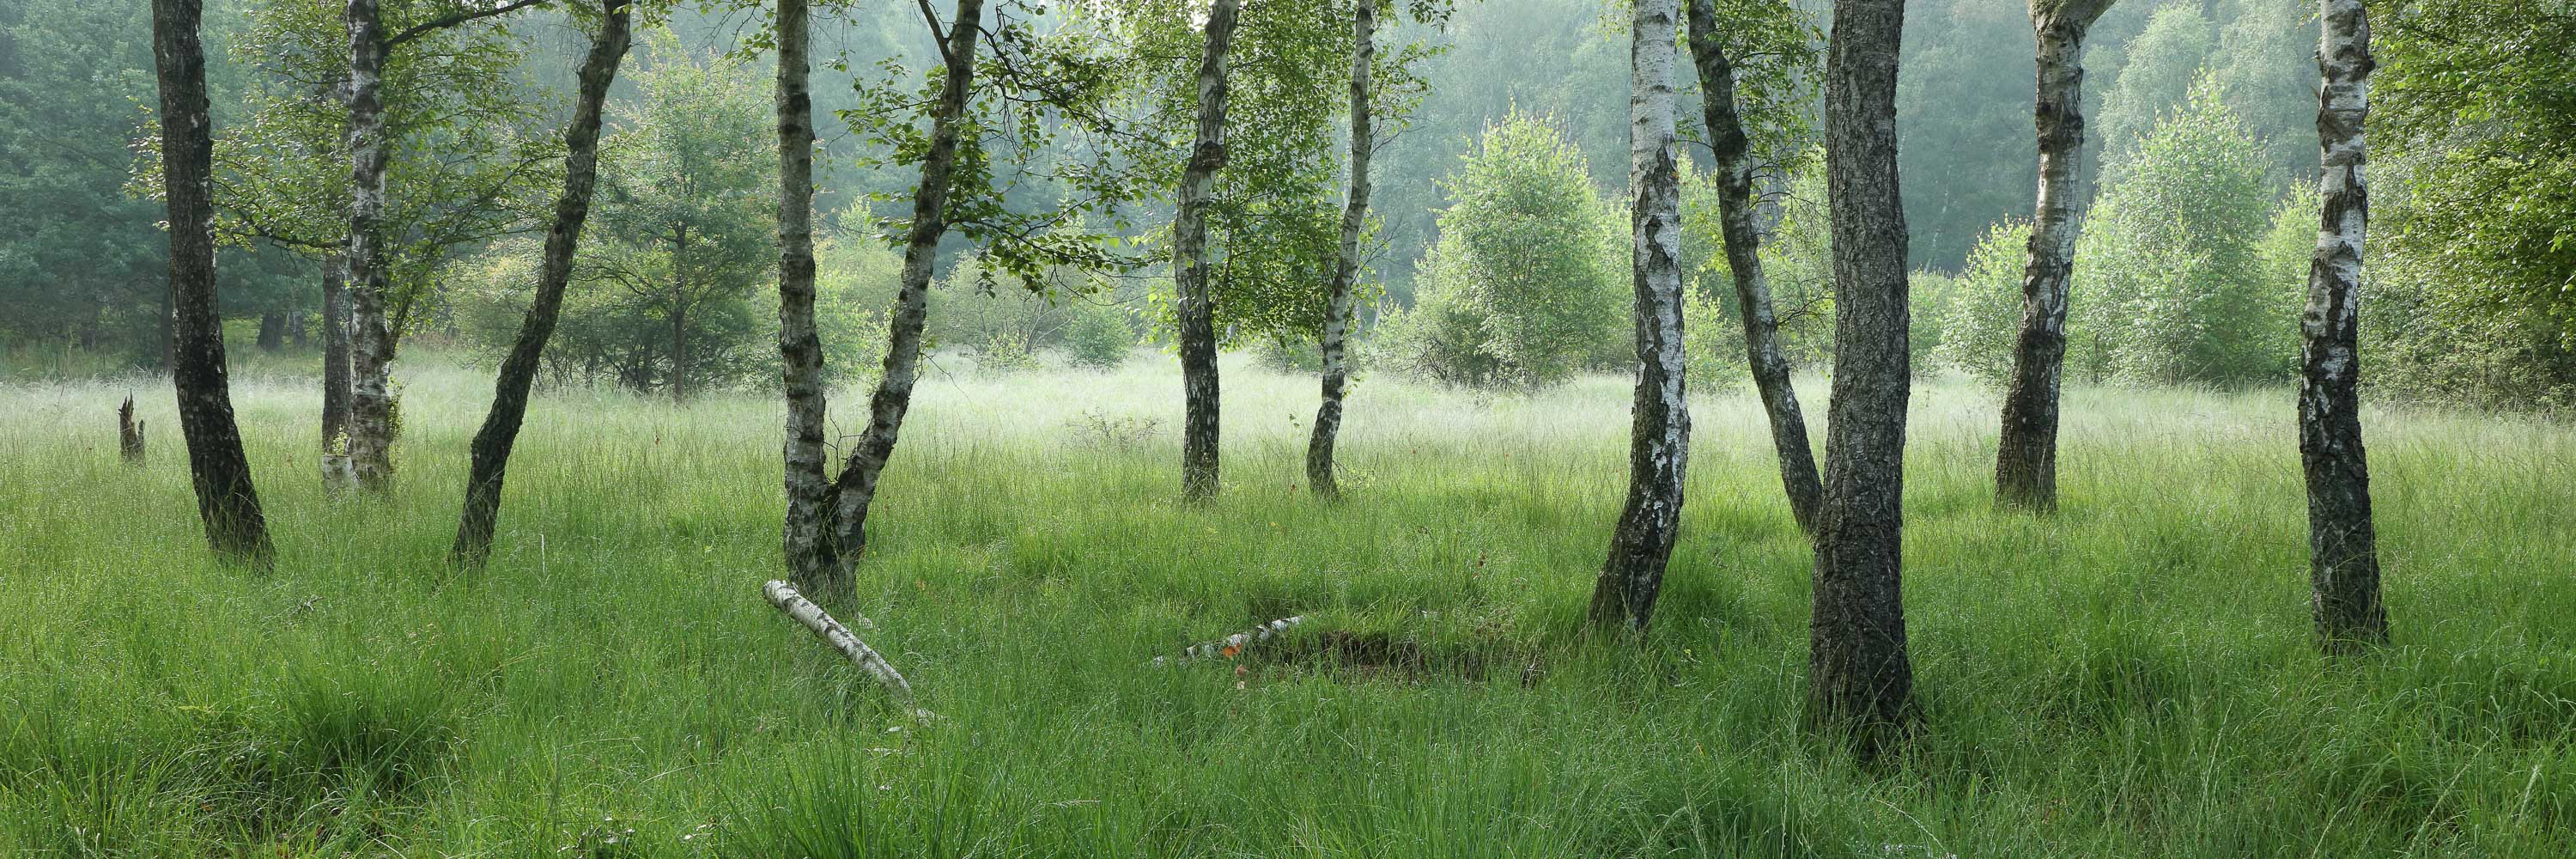 Birkenwaldpanorama